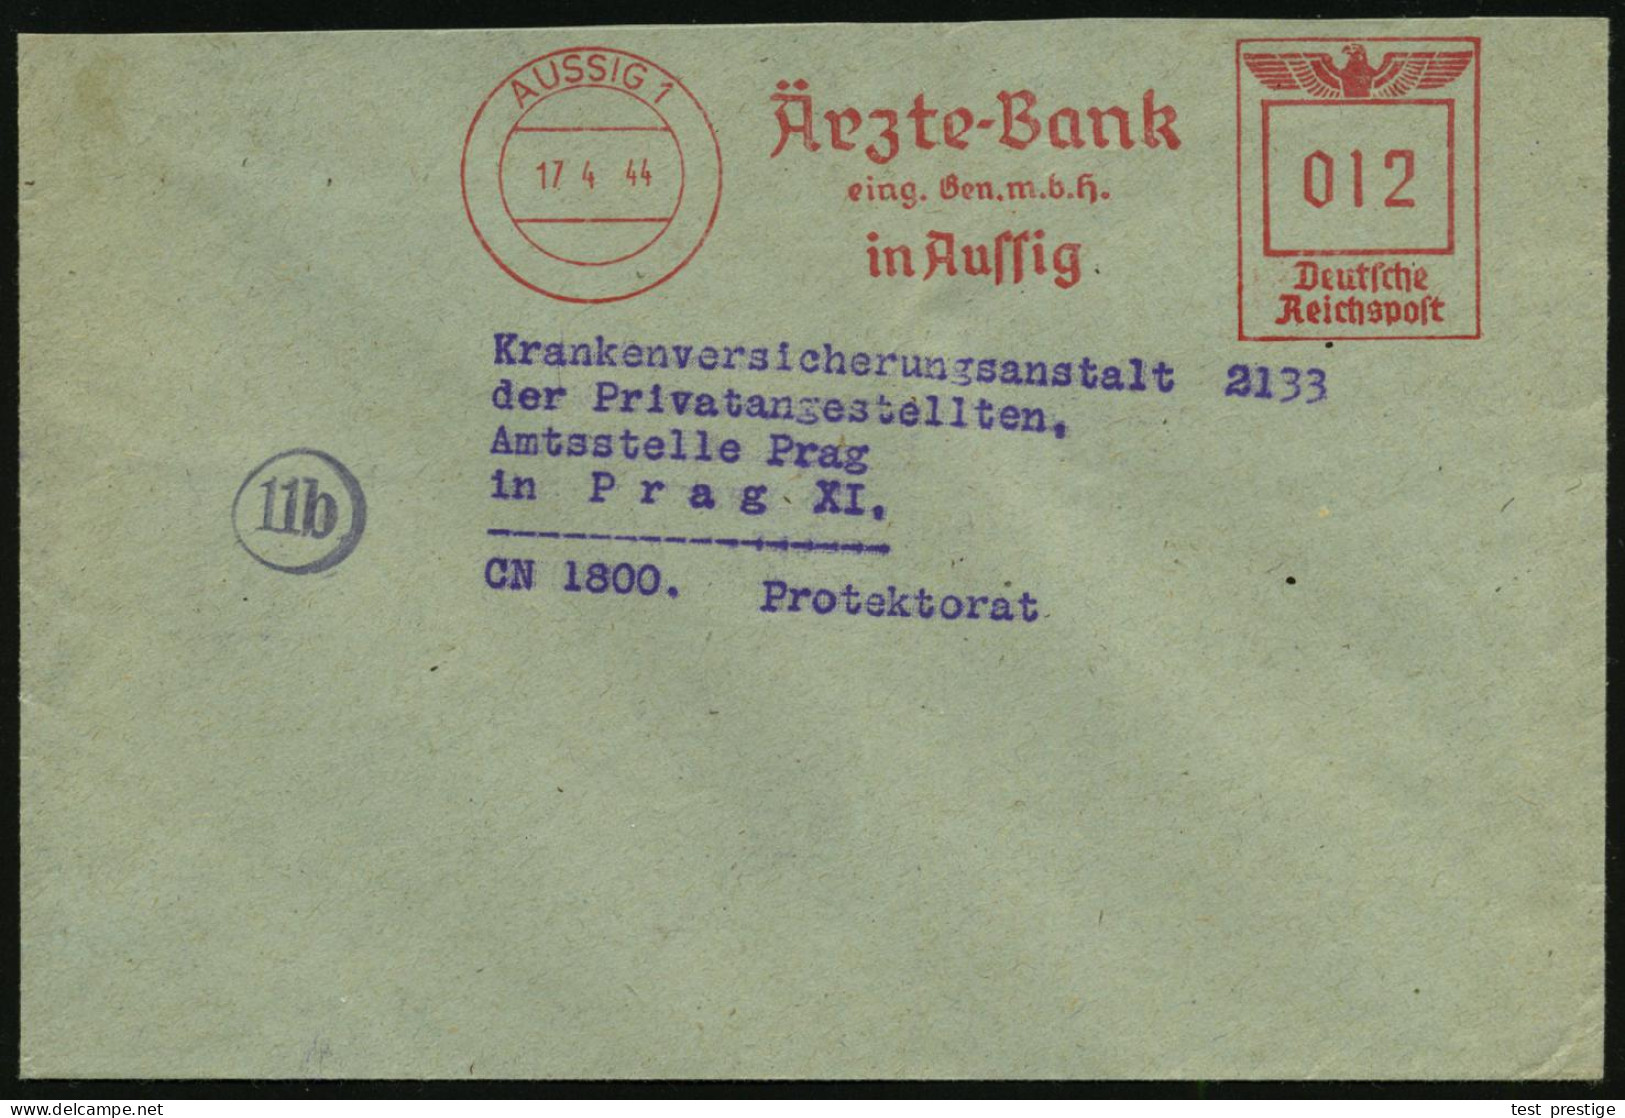 AUSSIG 1/ Ärzte-Bank/ Eing.Gen.m.b.H. 1944 (17.4.) AFS 012 Pf. Inl.-Tarif N. Prag (Böhmen & Mähren = Besetzte CSR), Klar - Médecine